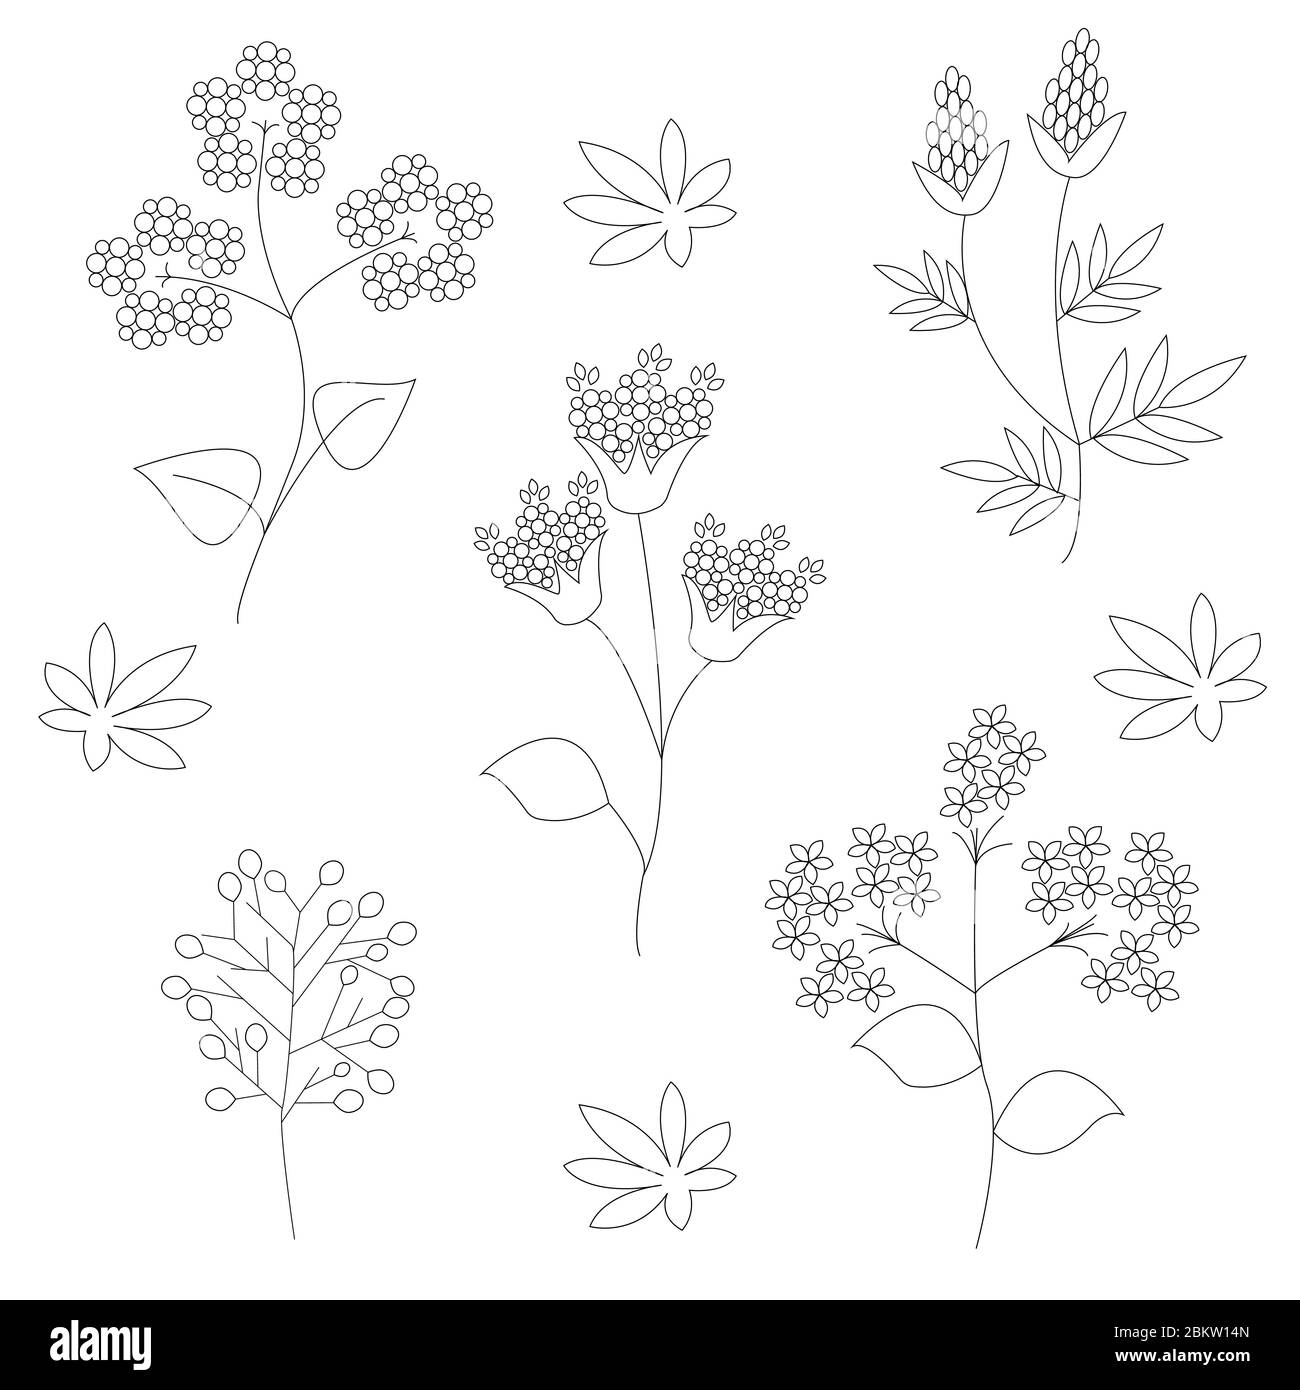 Un set di fiori selvatici su sfondo bianco in grafica vettoriale. Pianta medicinale. Per colorare libri, illustrazioni botaniche, carta da imballaggio, tessuti Illustrazione Vettoriale